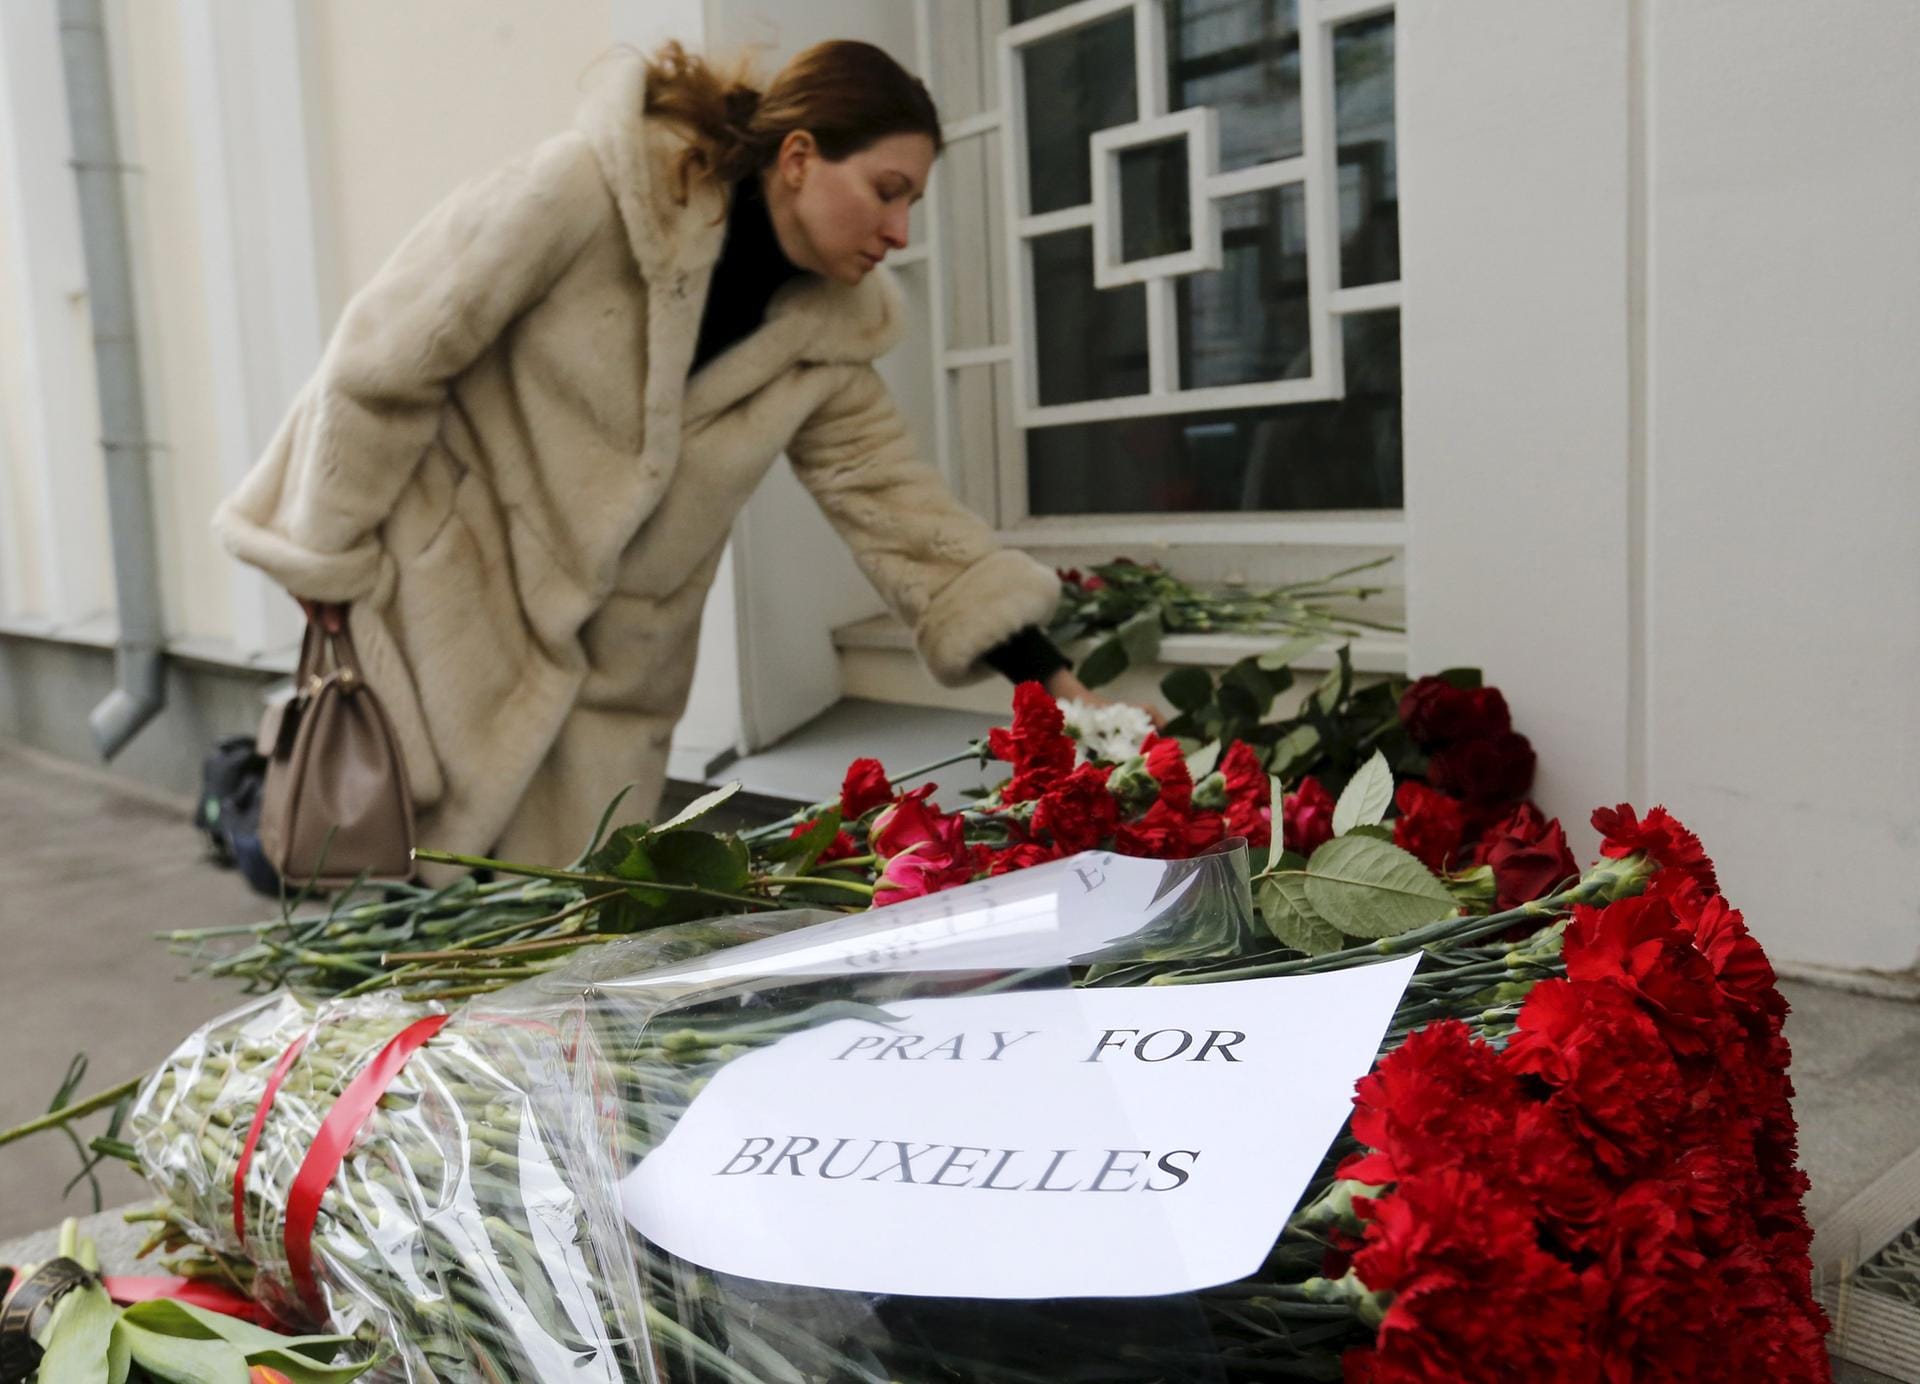 In Moskau legt eine Frau Blumen für die Opfer der Brüsseler Anschläge vor der belgischen Botschaft nieder.